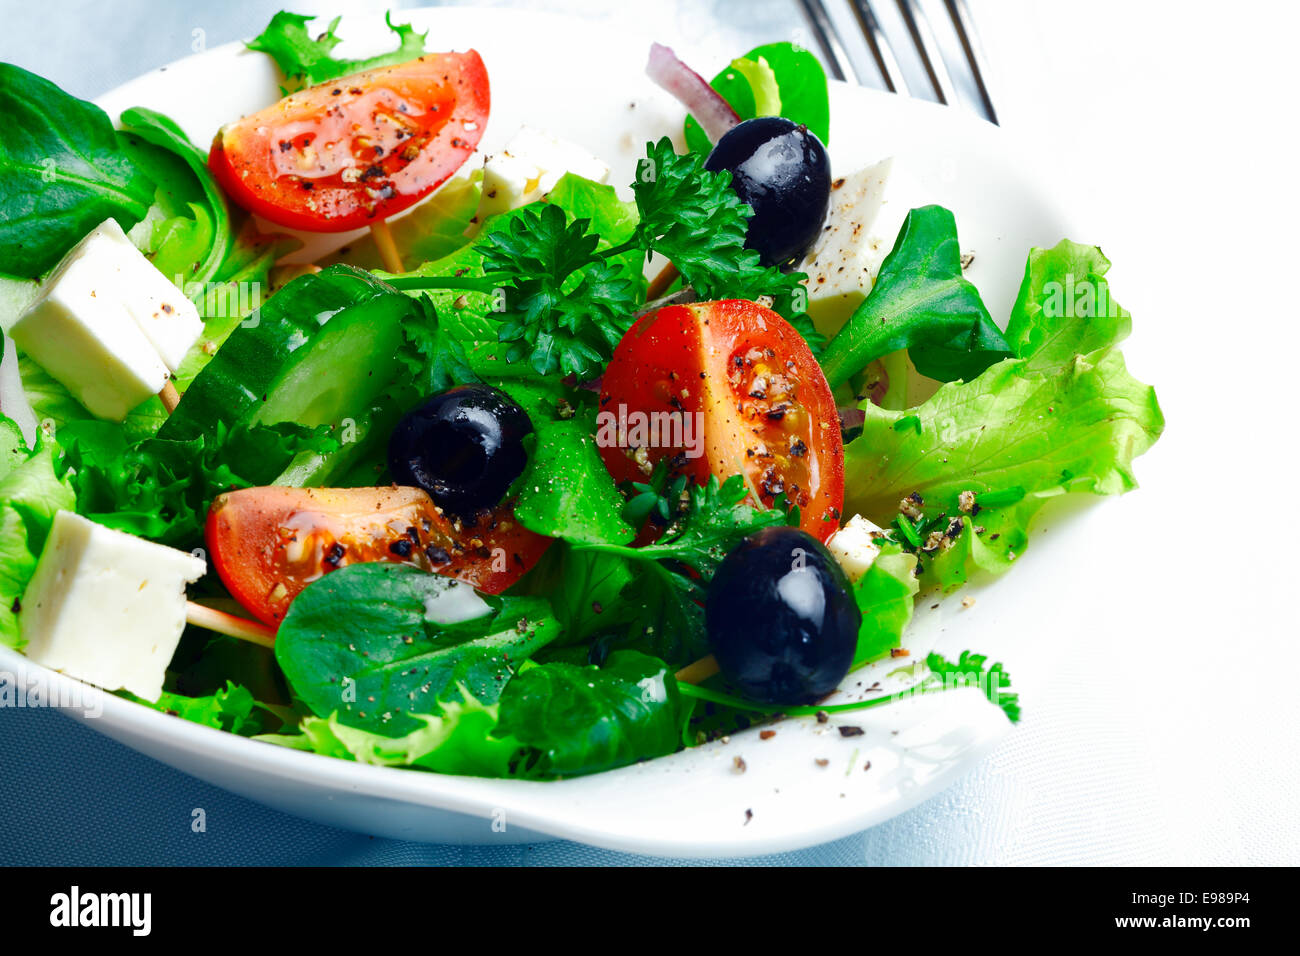 Servant de délicieux salade grecque à la feta, olives, d'herbes, de tomate et de laitue dans un plat individuel comme accompagnement d'un repas Banque D'Images